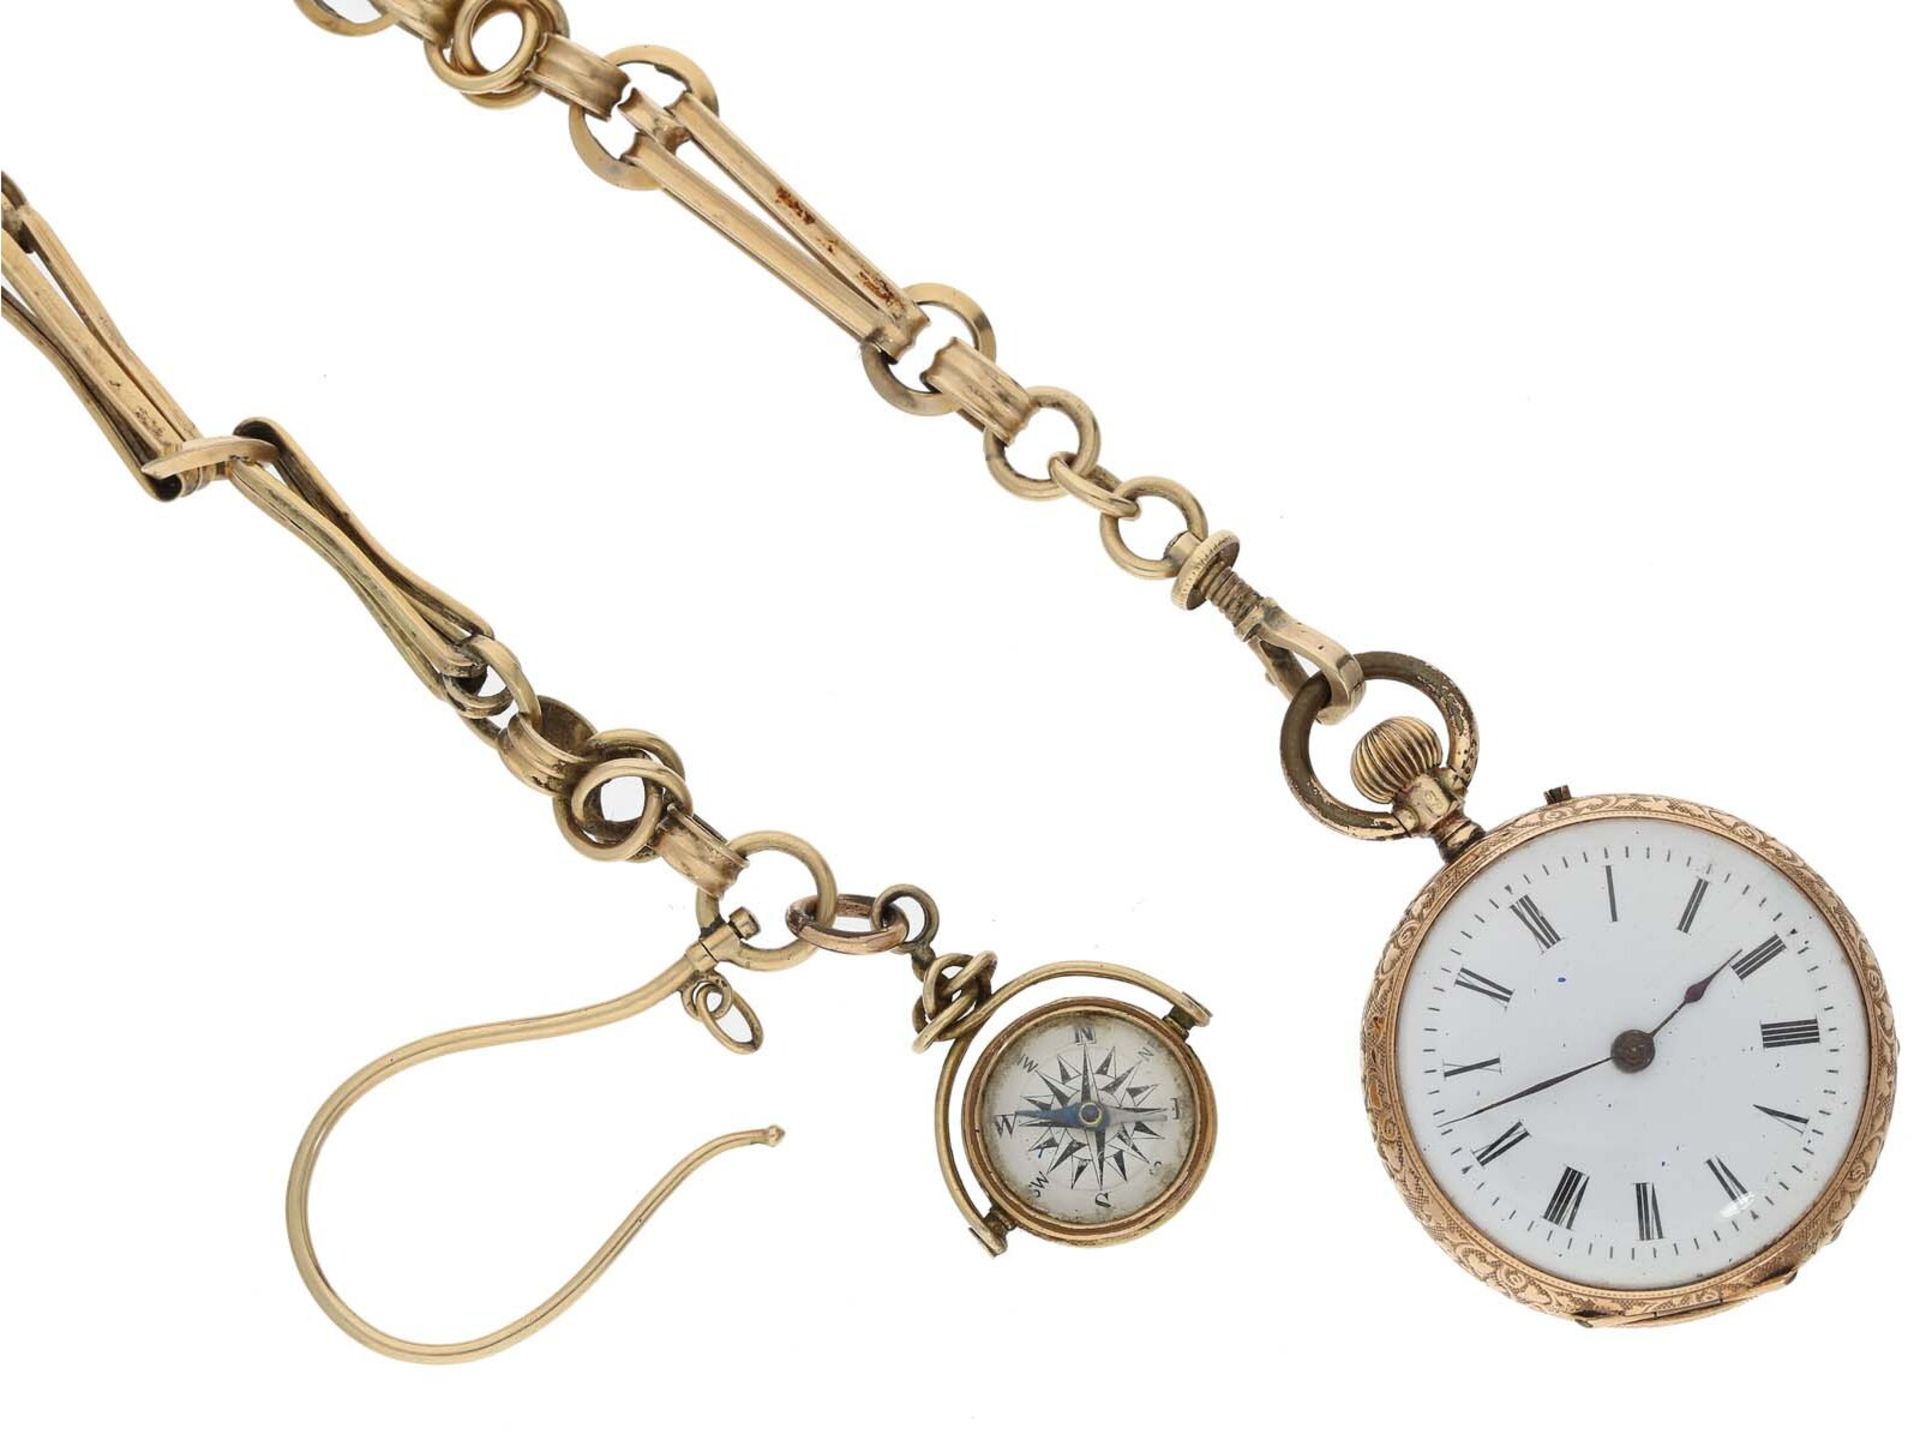 Taschenuhr: goldene Damenuhr um 1900 und seltene goldene Uhrenkette mit goldenem Kompass, ca.1900